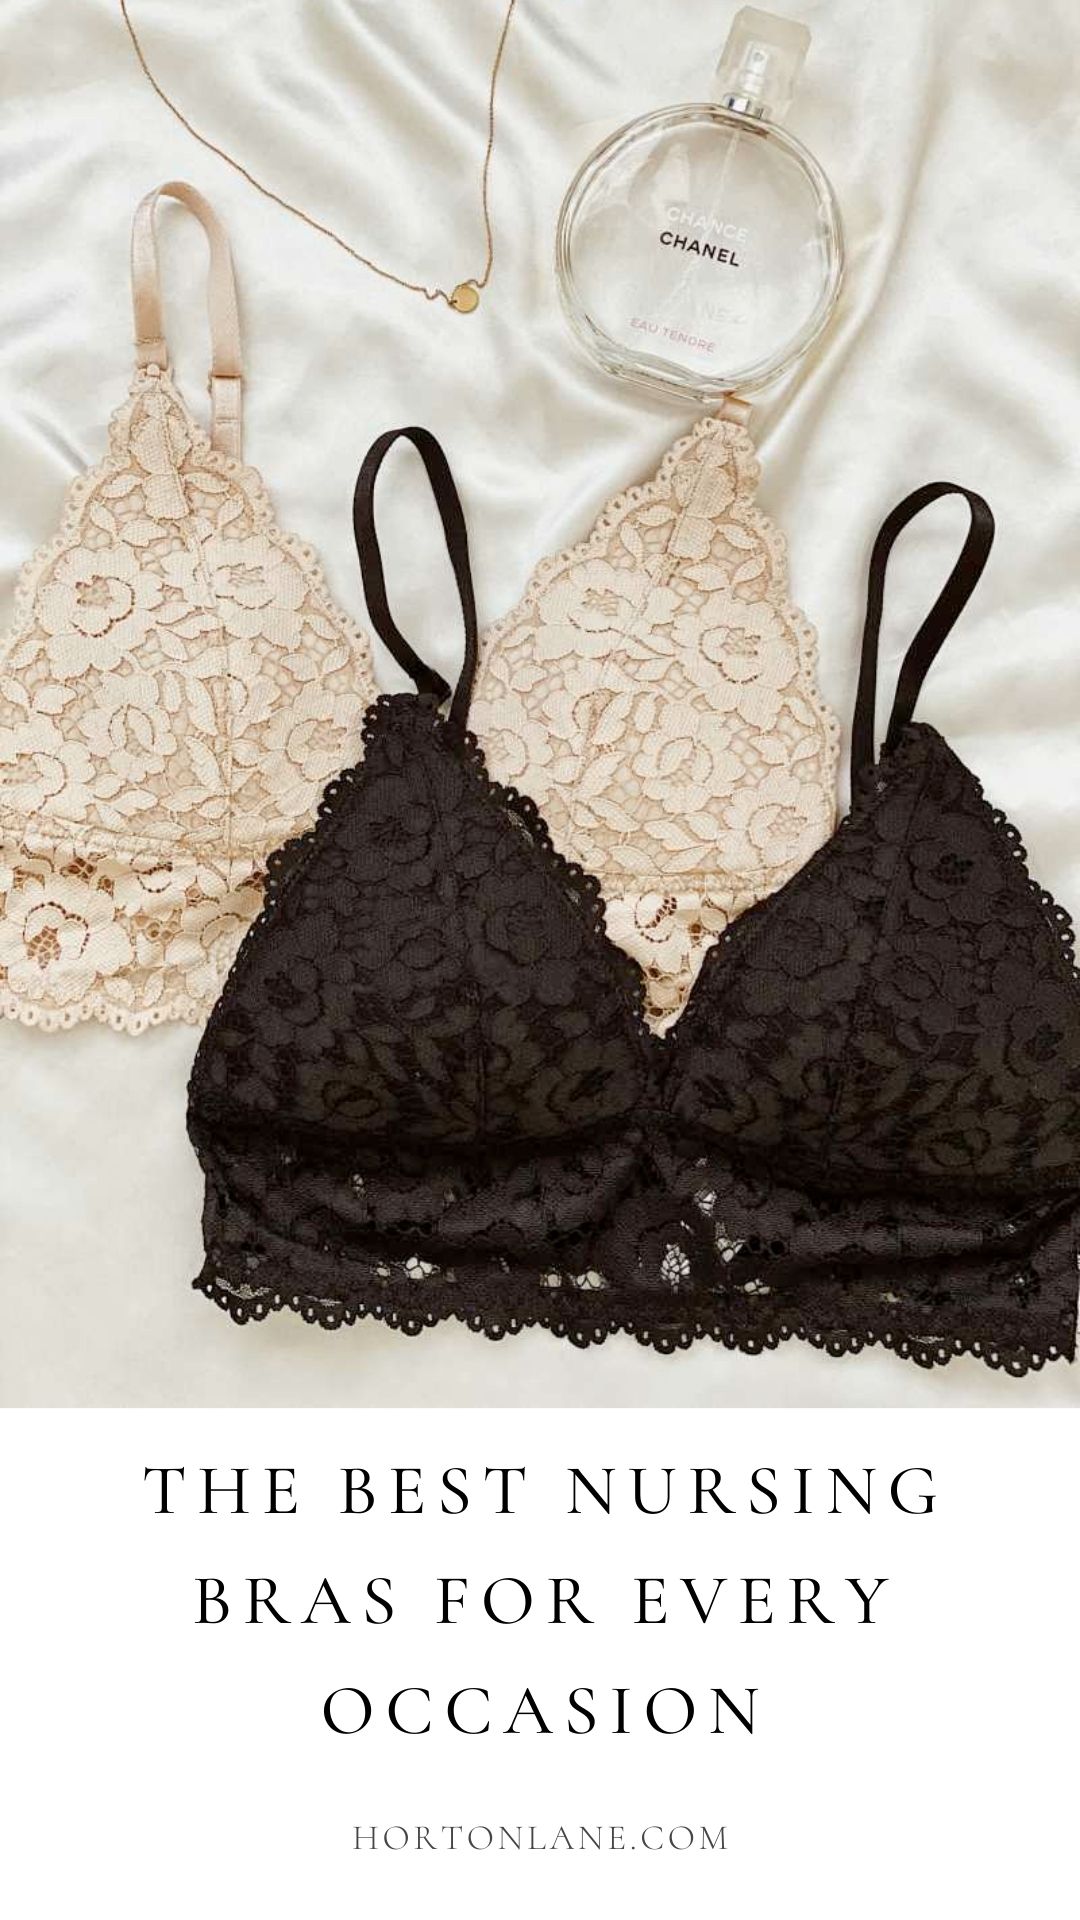 The best nursing bras